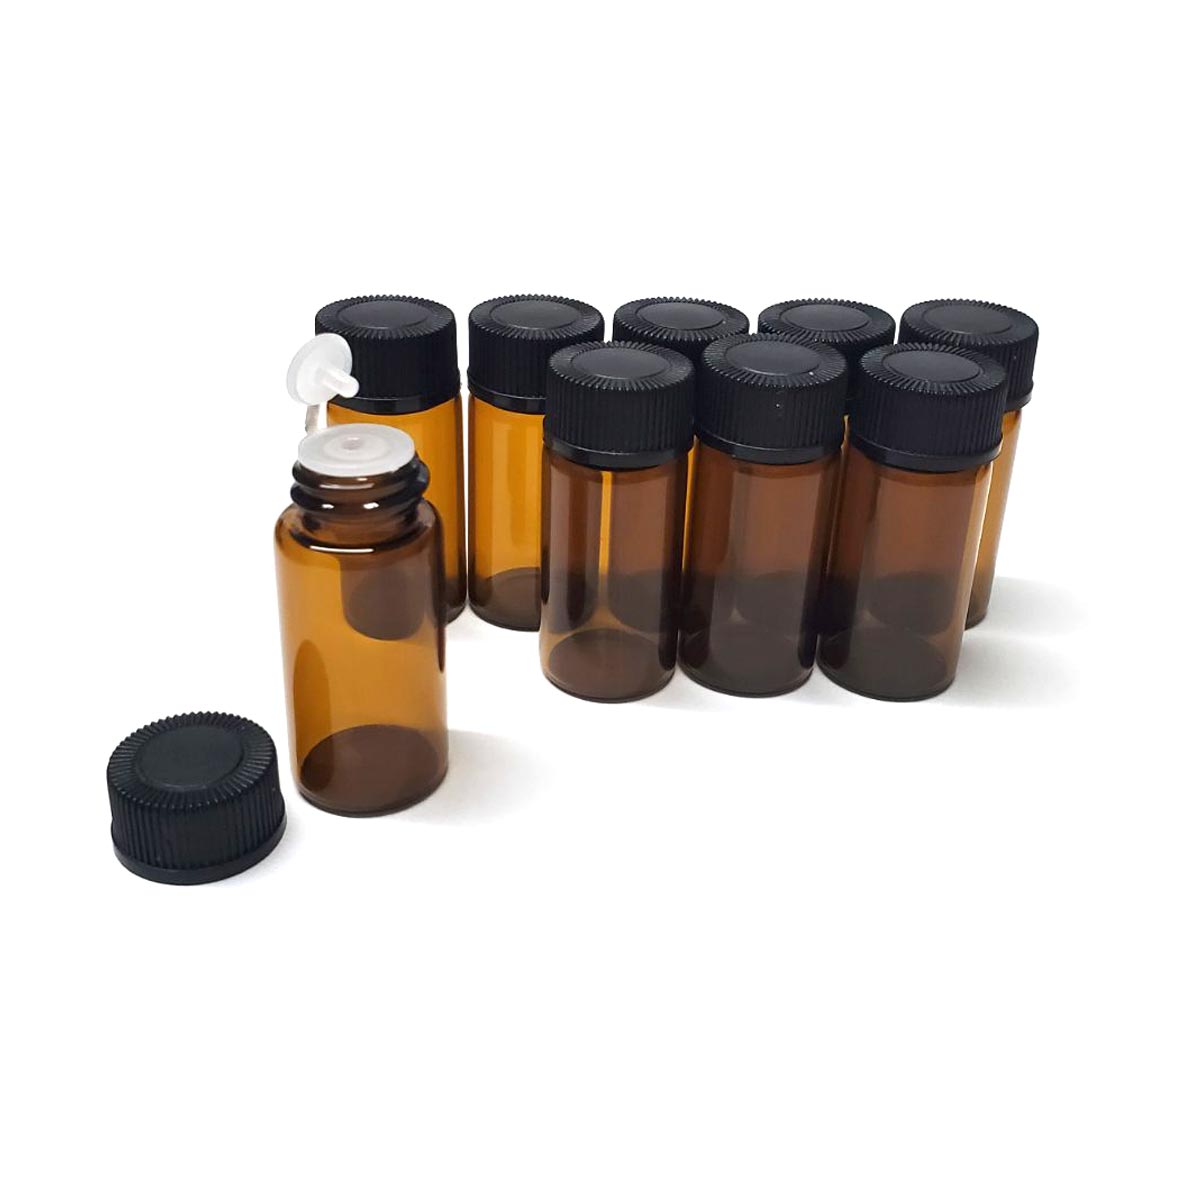 アロマオイル 香水 小分け 遮光瓶 9本セット 茶色 3サイズ 1ml 2ml 3ml アルコール対応 エッセンシャルオイル 中栓付き 送料無料